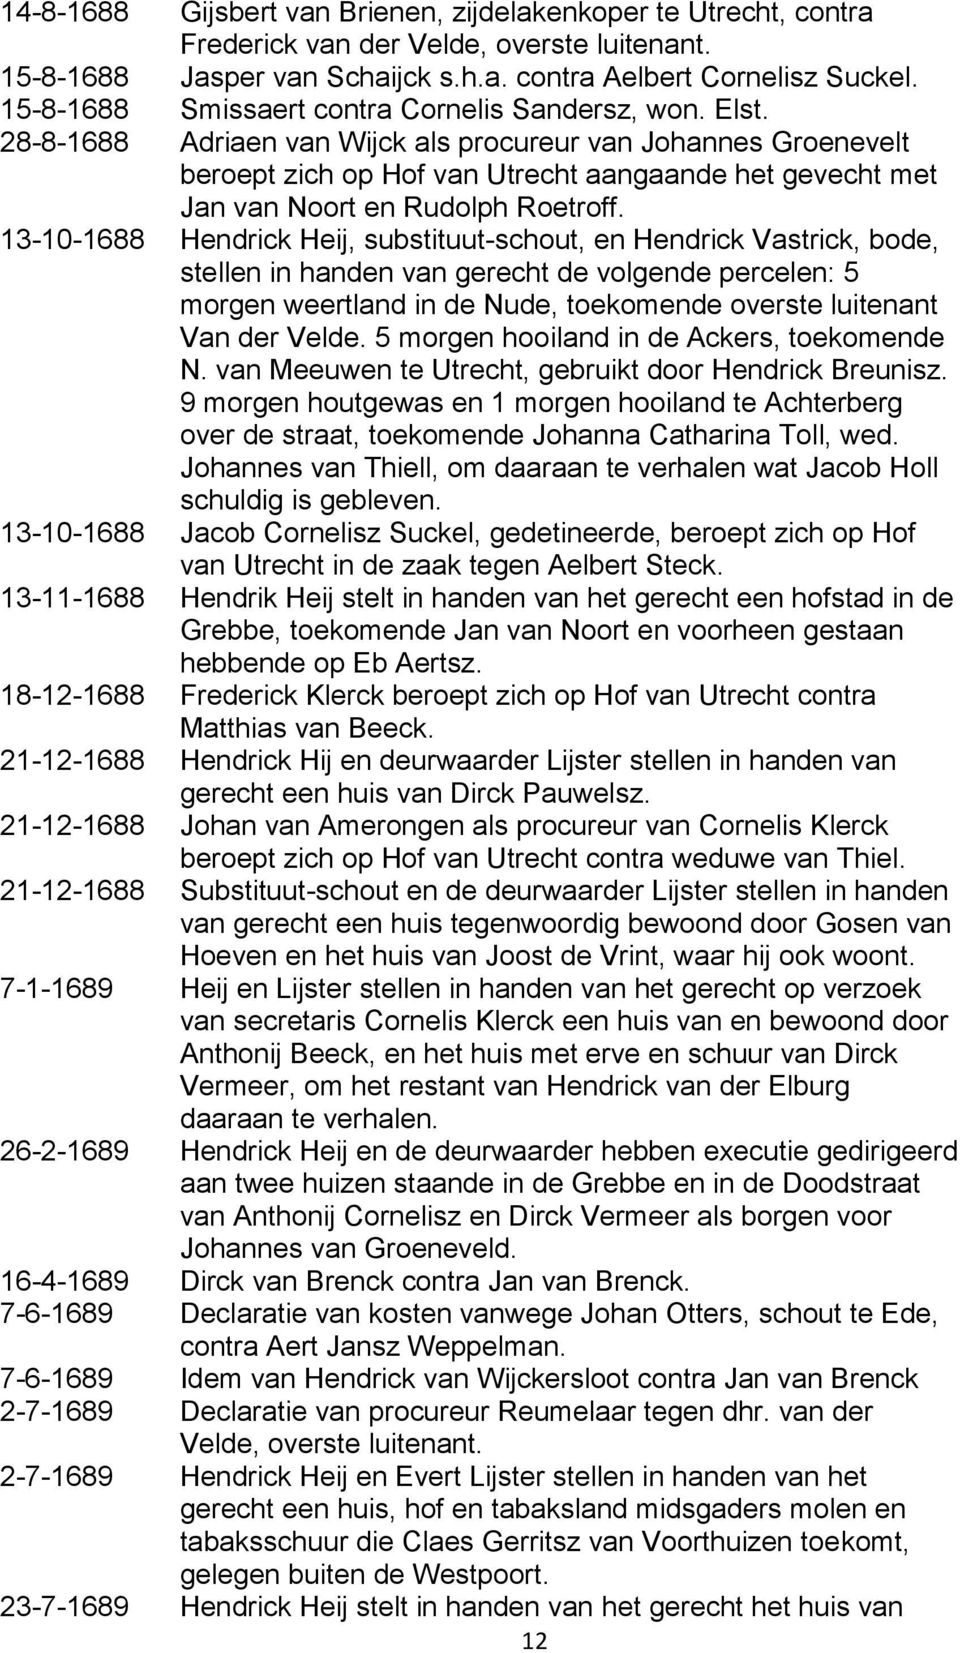 28-8-1688 Adriaen van Wijck als procureur van Johannes Groenevelt beroept zich op Hof van Utrecht aangaande het gevecht met Jan van Noort en Rudolph Roetroff.